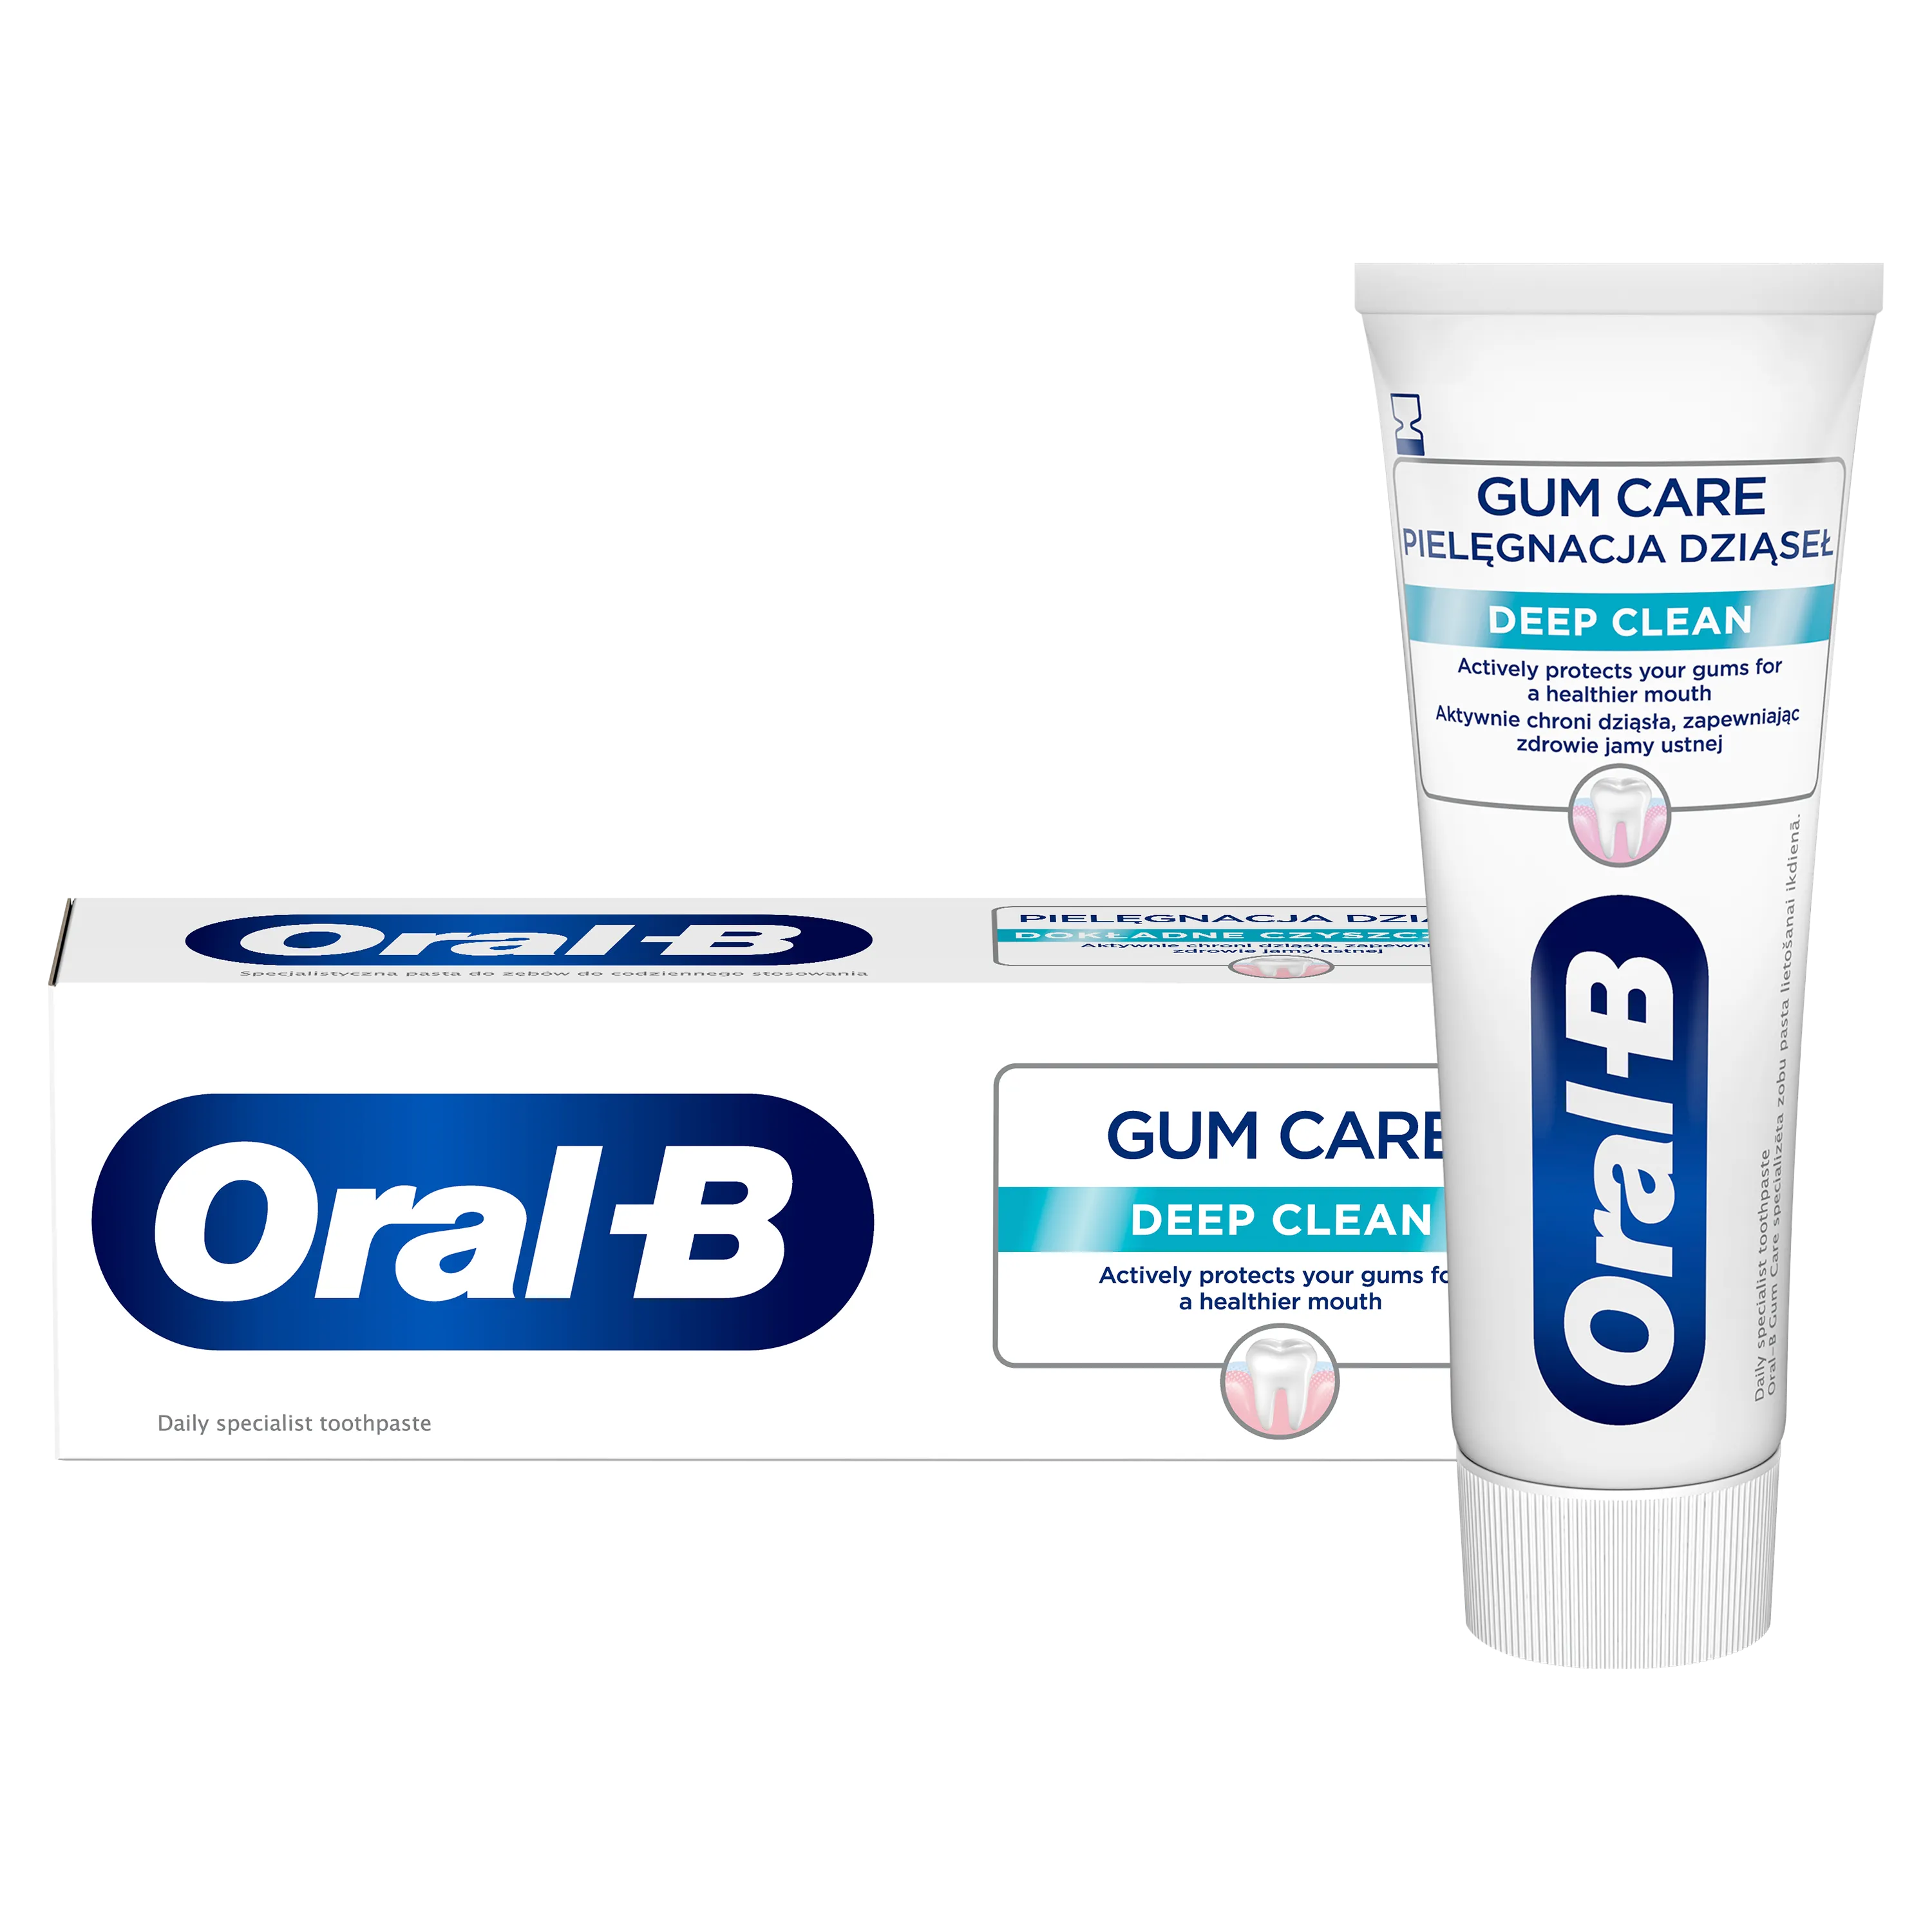 Oral-B Gum Care Deep Clean pasta do zębów, 65 ml